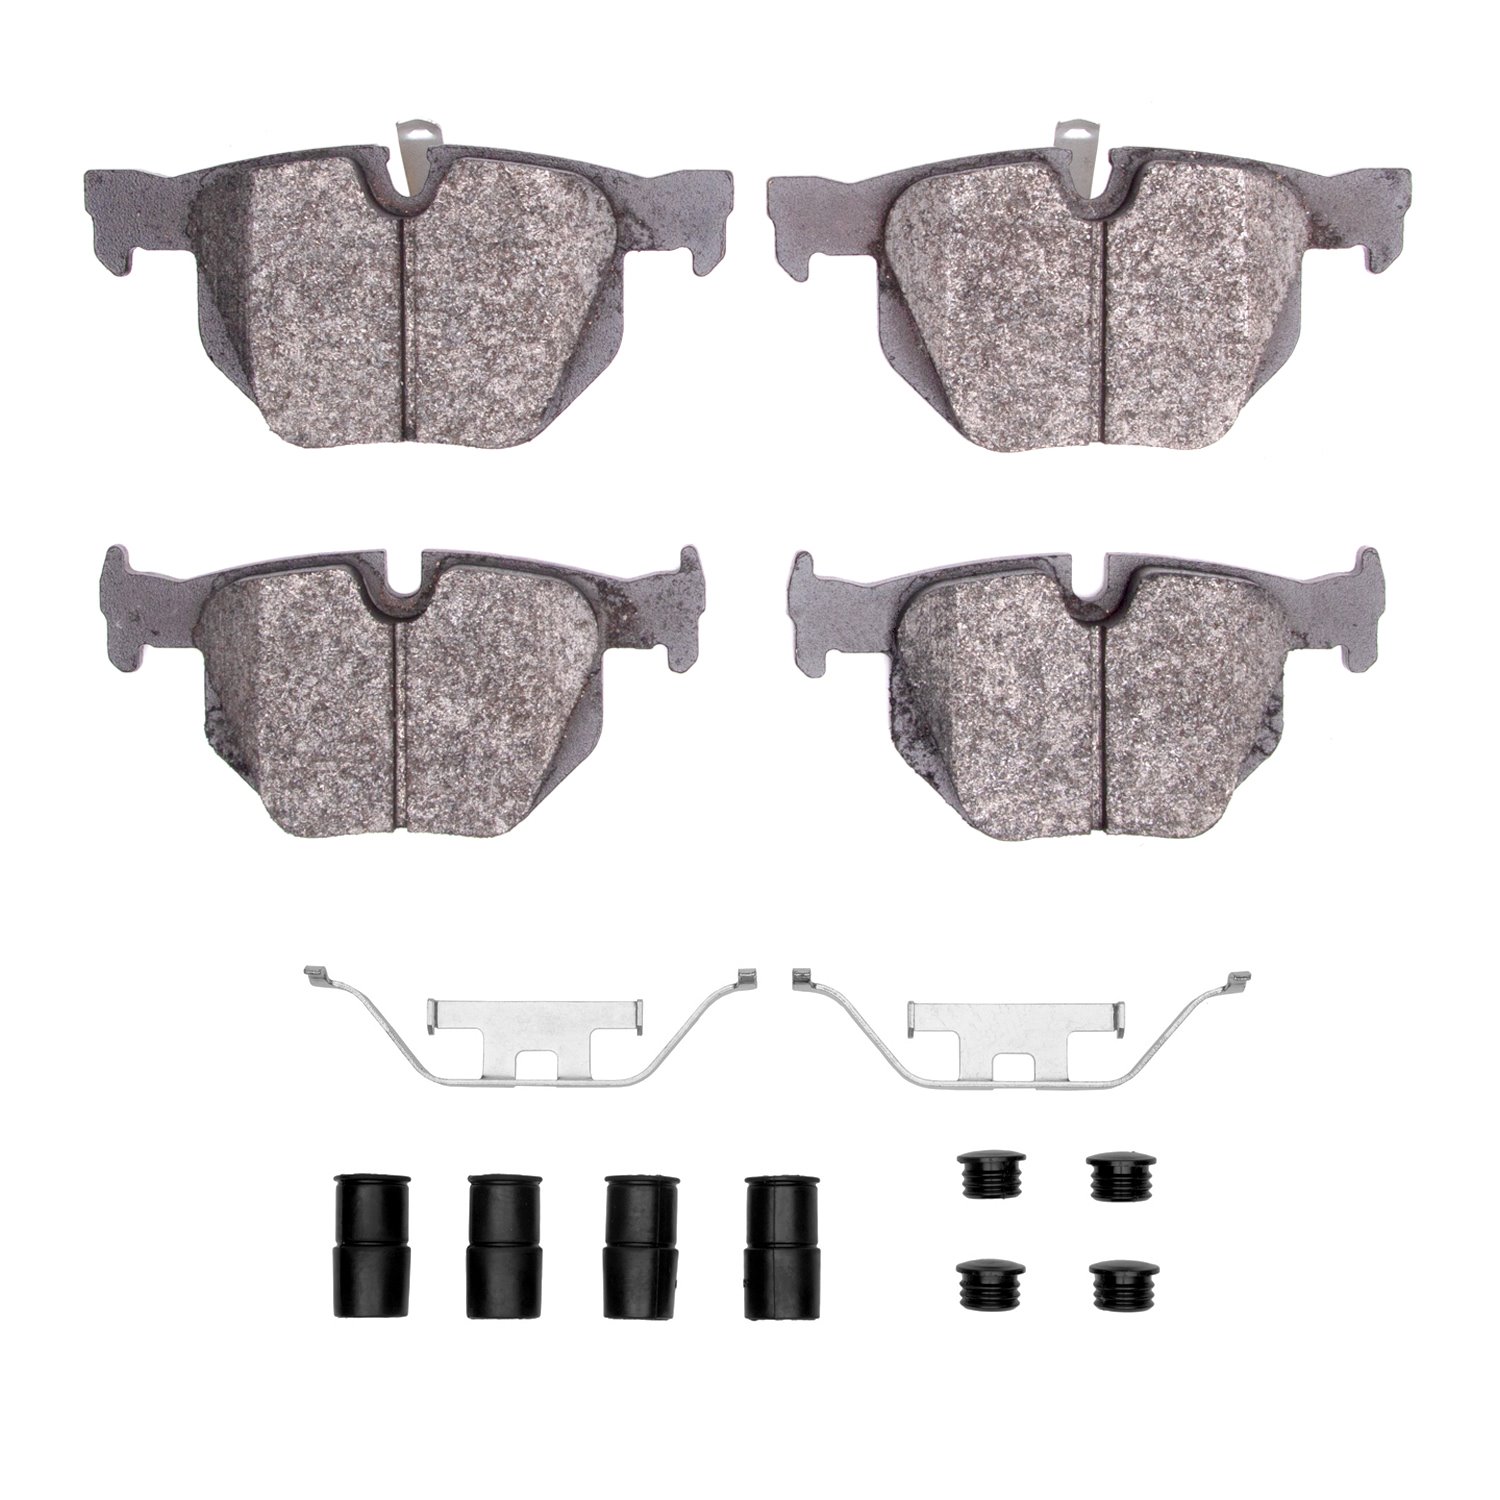 1600-1170-01 5000 Euro Ceramic Brake Pads & Hardware Kit, 2006-2015 BMW, Position: Rear